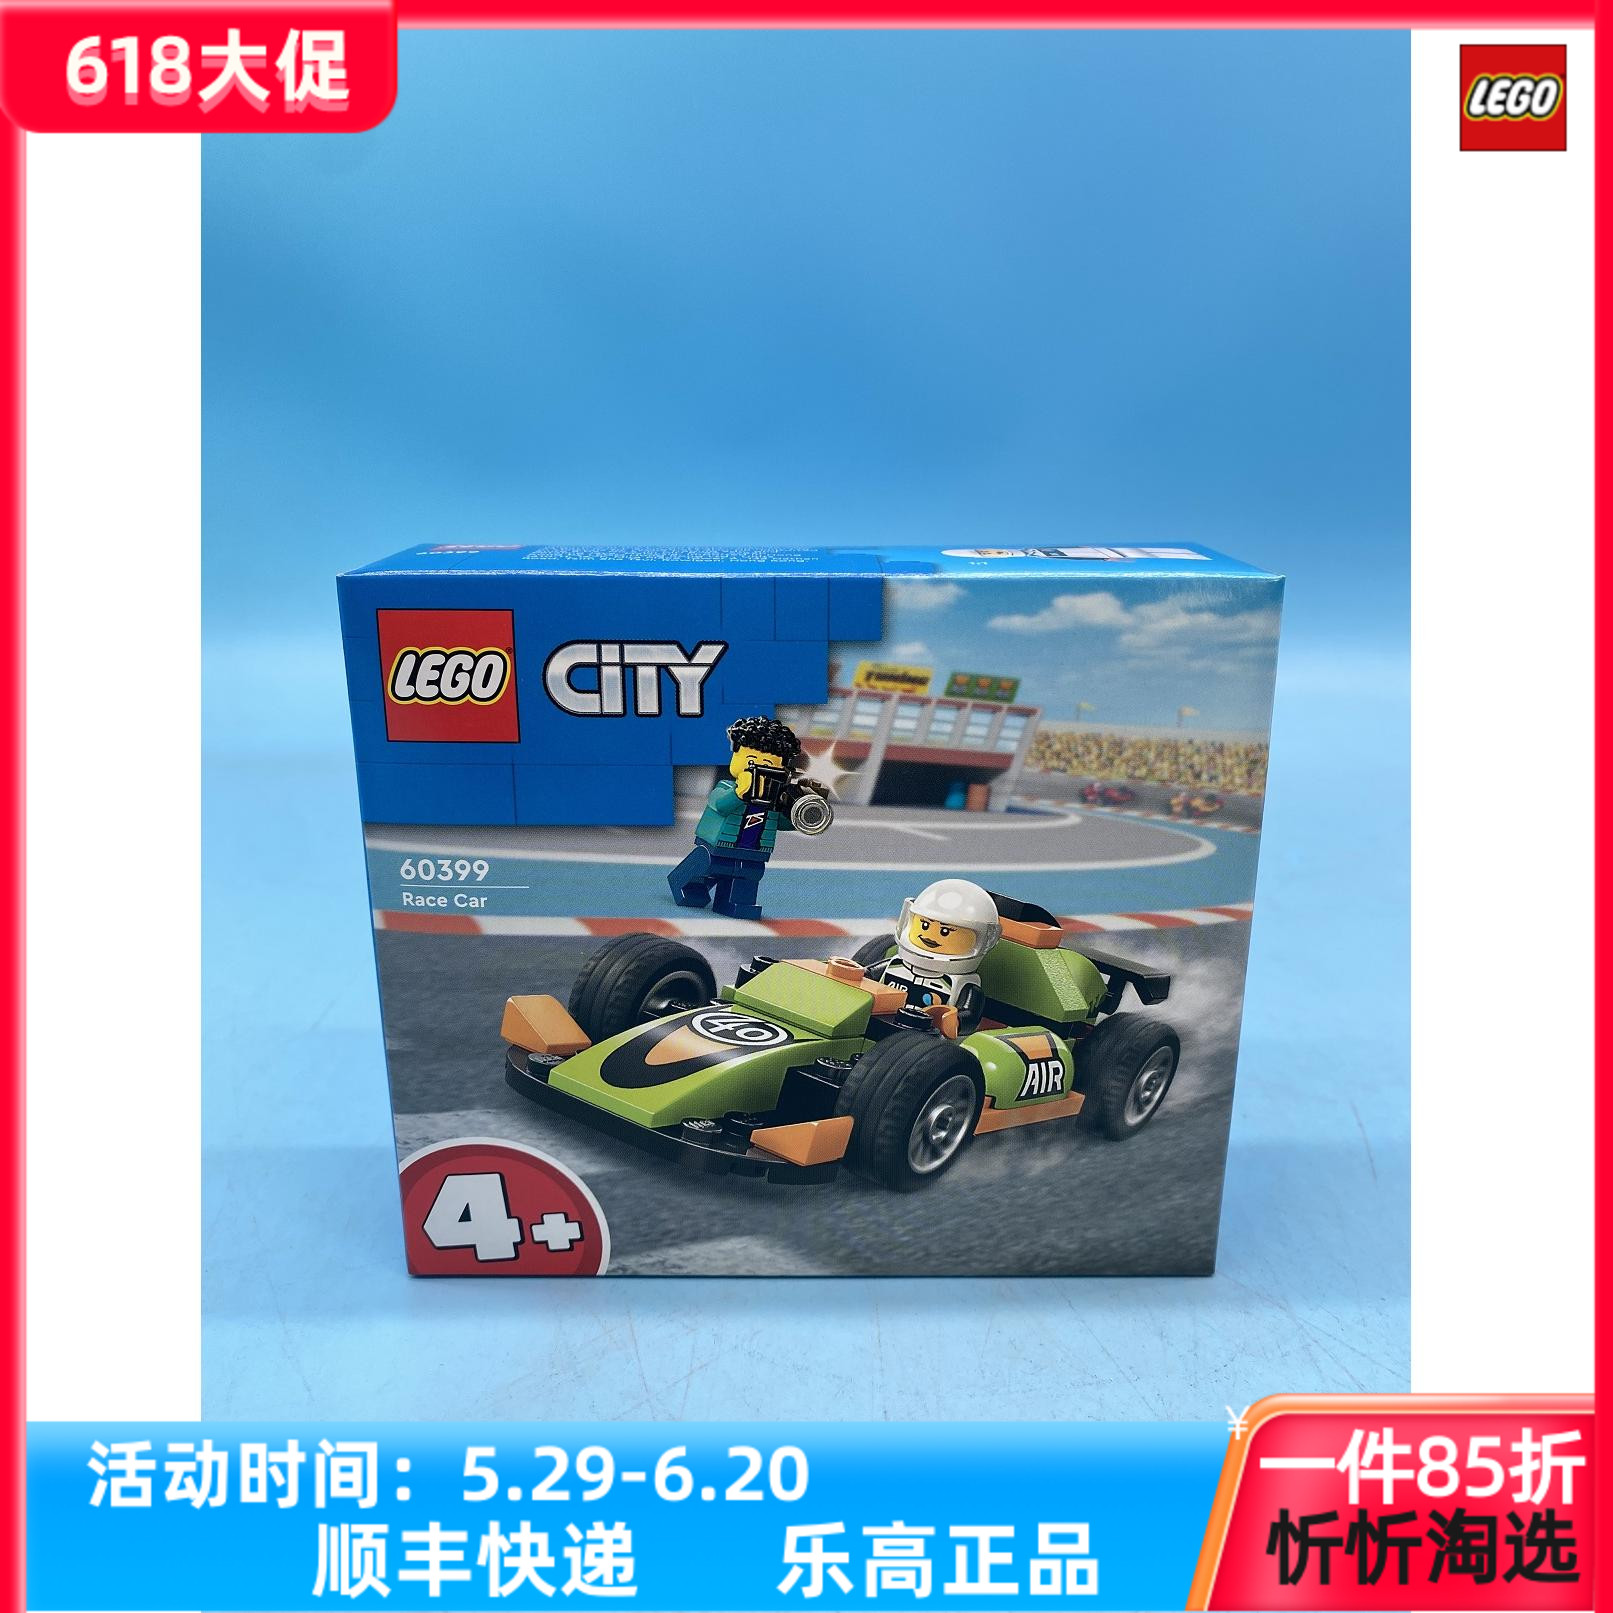 LEGO/乐高城市系列60399F1赛车男孩女孩益智积木拼装玩具礼物模型